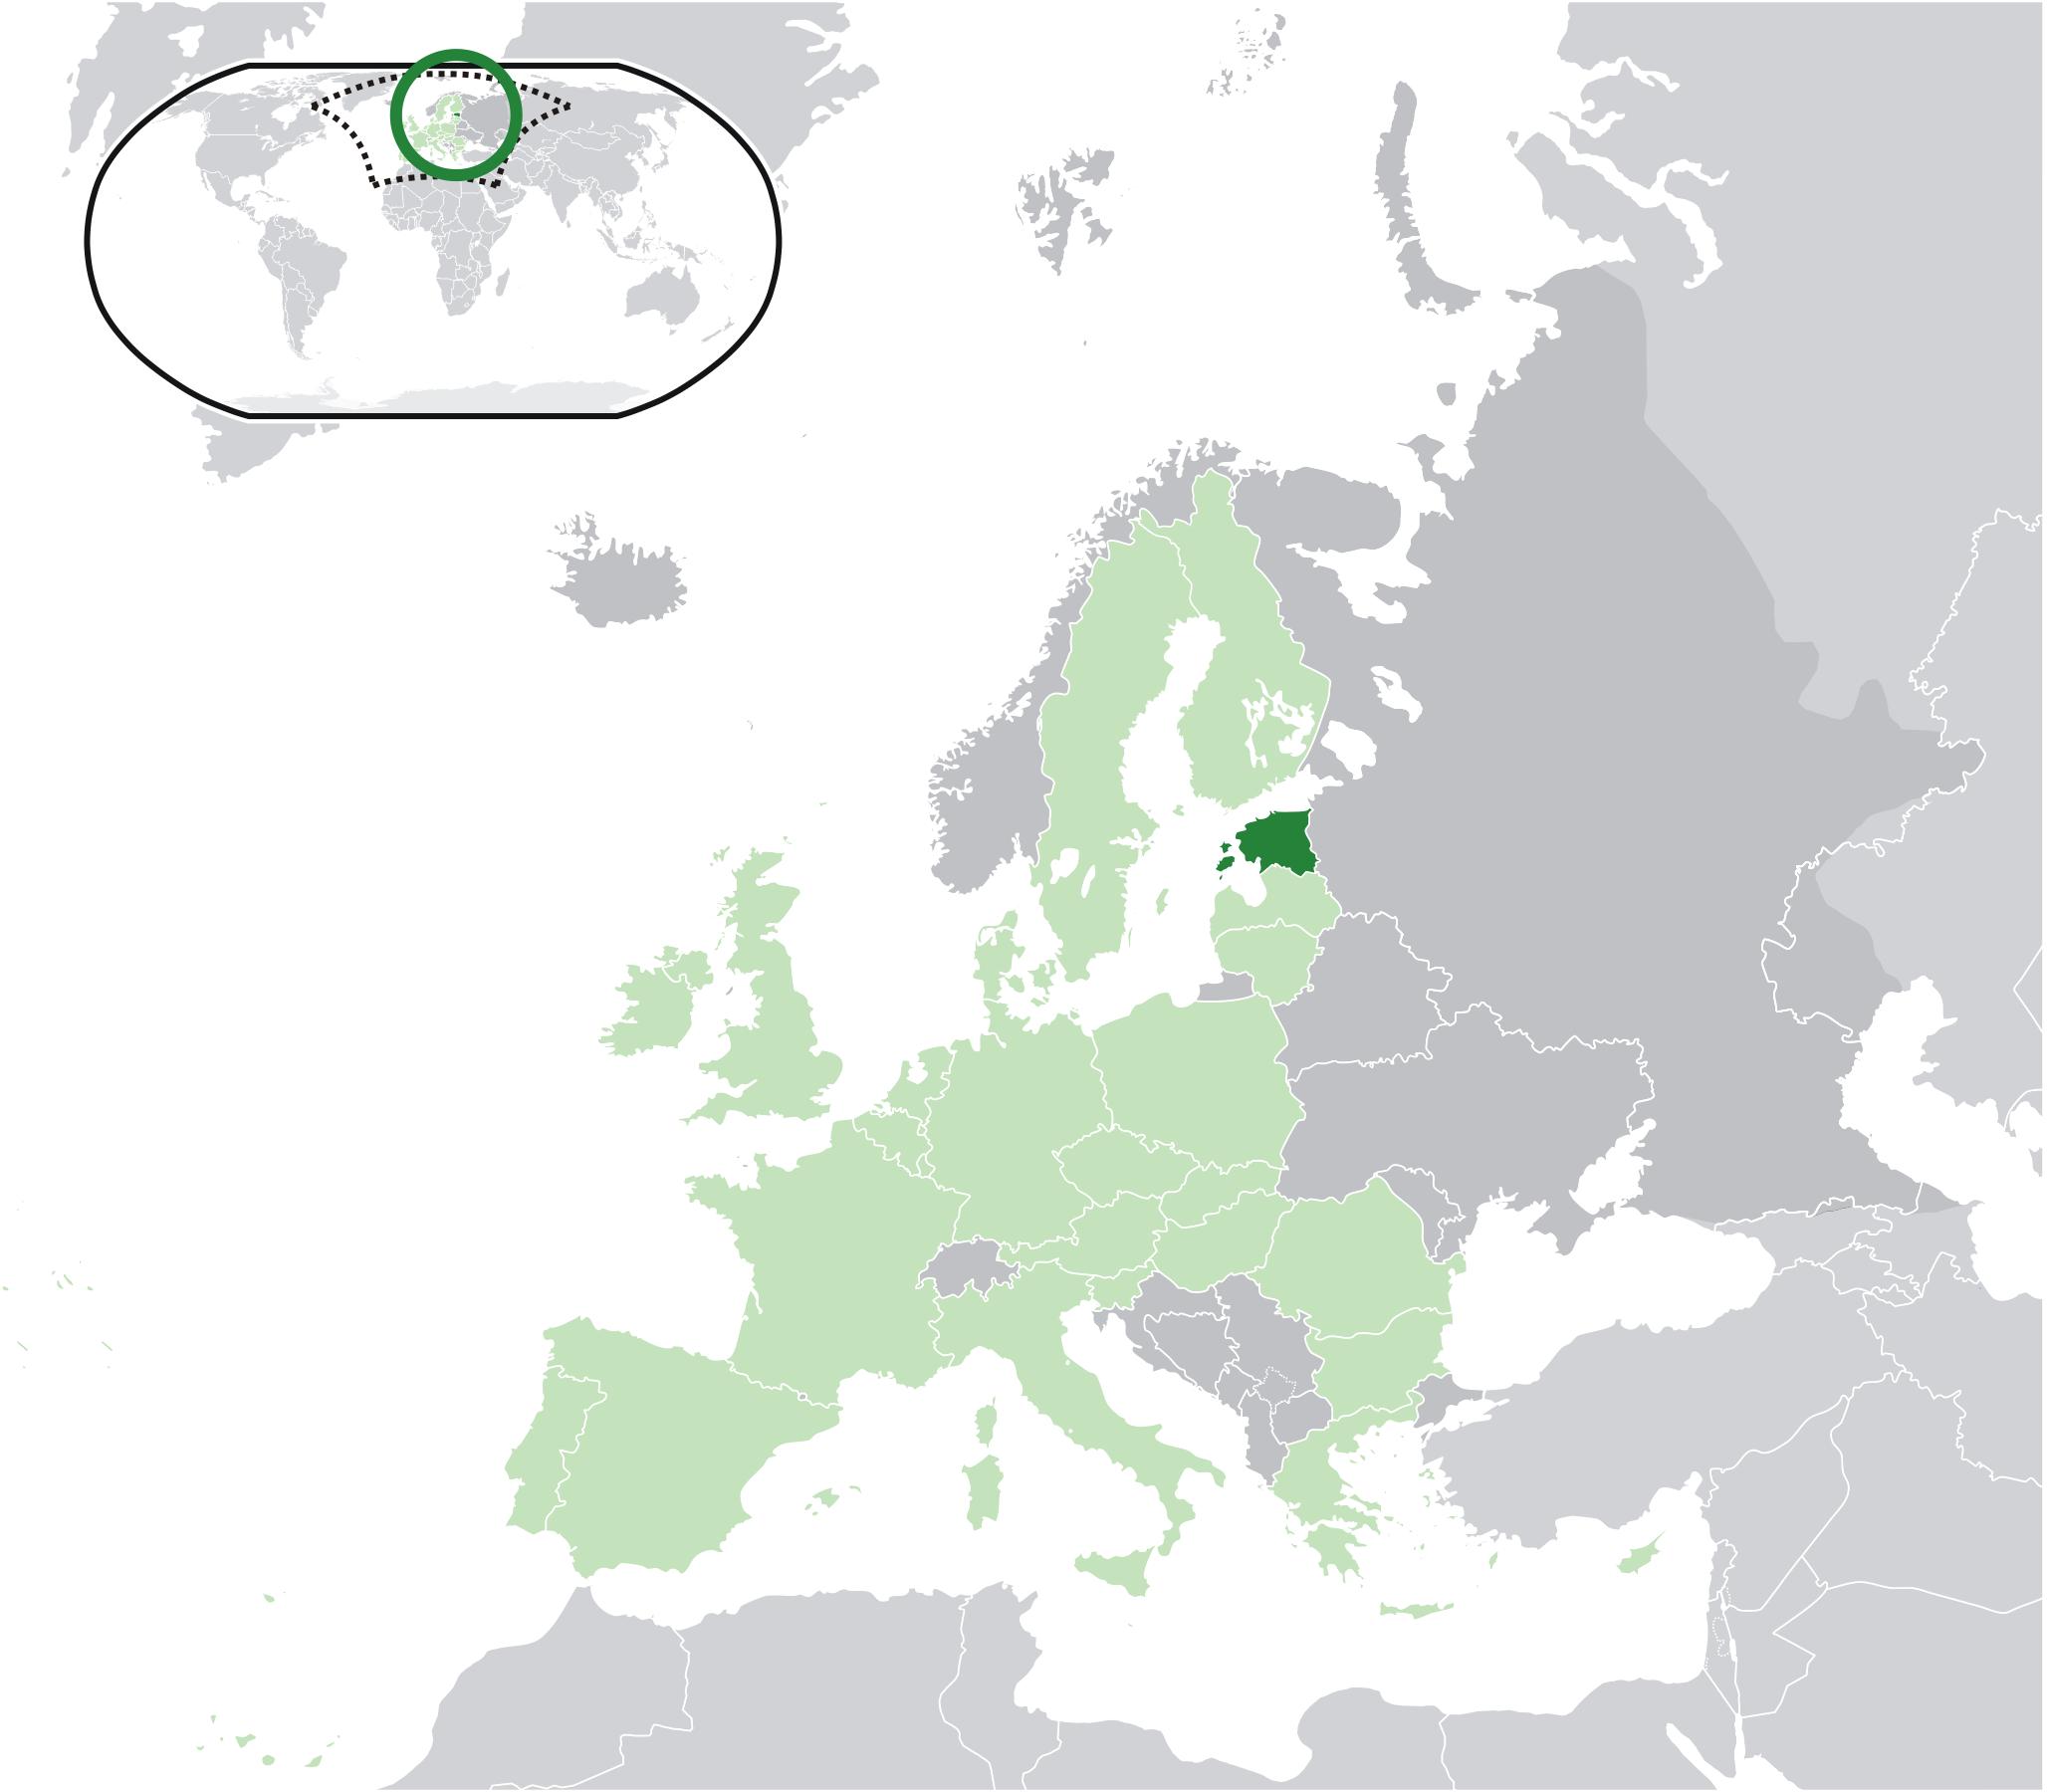 Viron kartta-eurooppa - Viro on euroopan kartta (Pohjois-Eurooppa - Eurooppa )